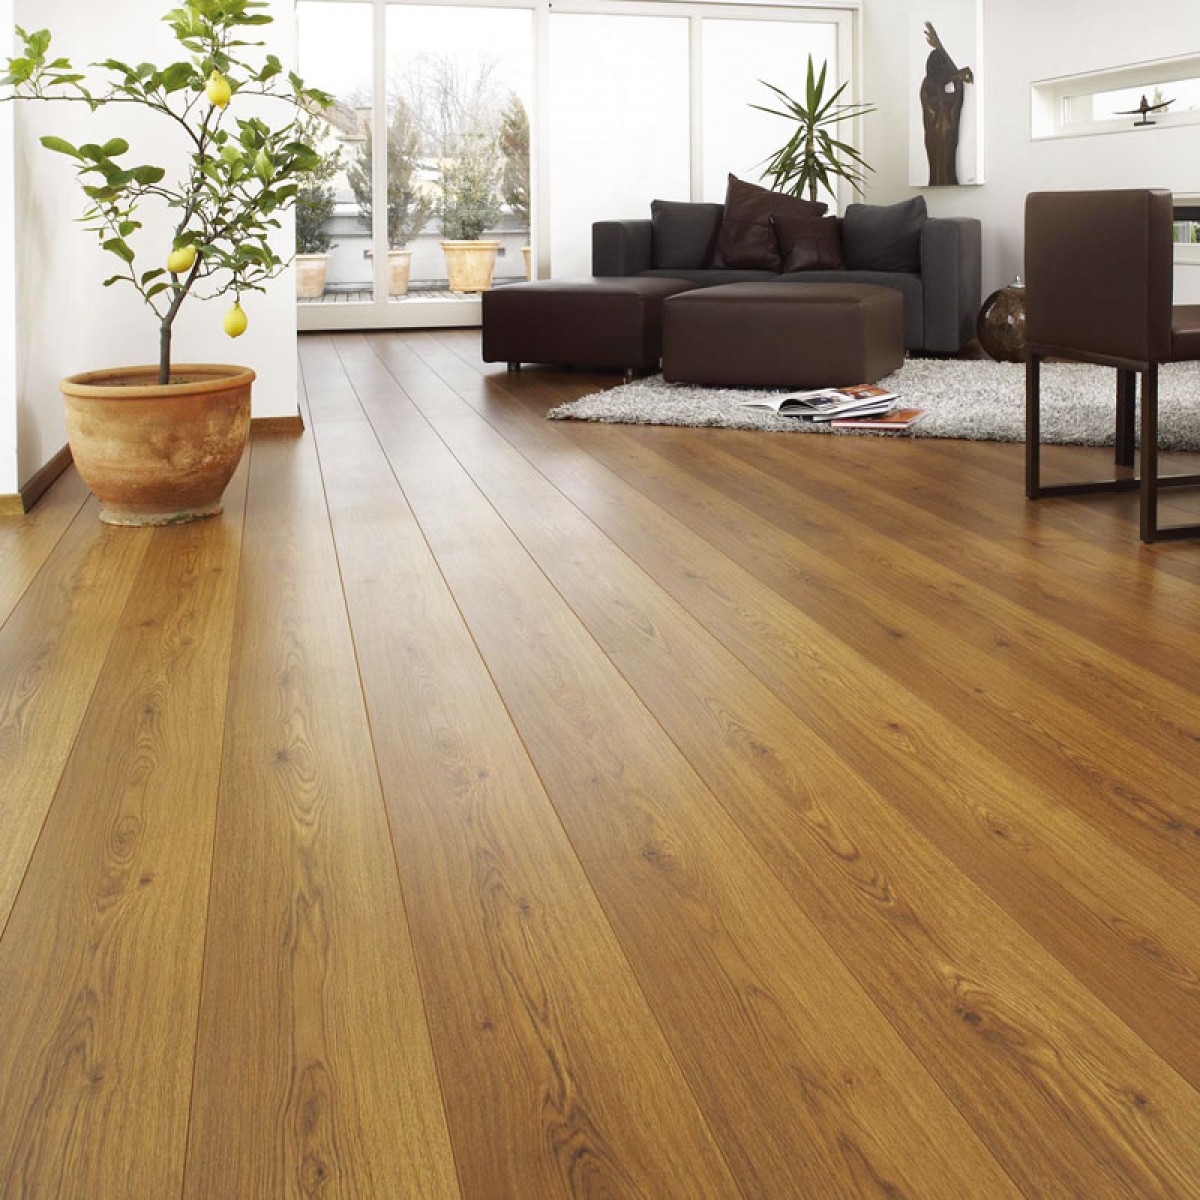 必美地板环保强化复合北欧风地暖耐磨家用客厅卧室木地板